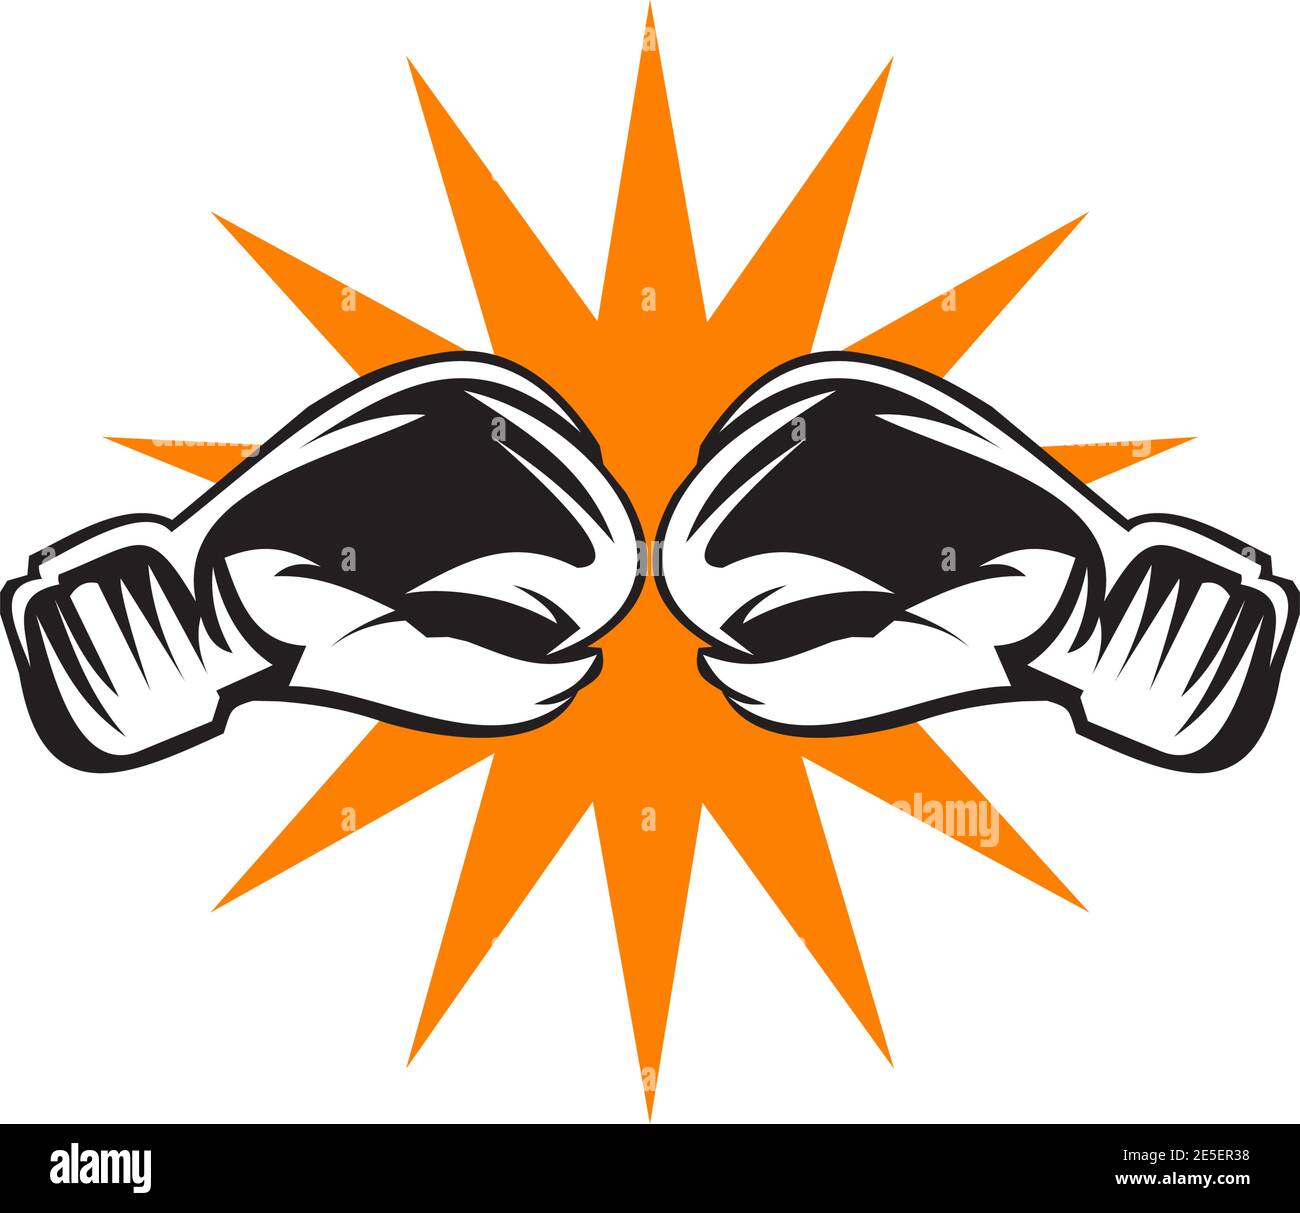 Boxeador Atleta En Casco Protector Hombre Fuerte En Gl Grande Del Boxeo  Ilustración del Vector - Ilustración de gente, ajuste: 66213363